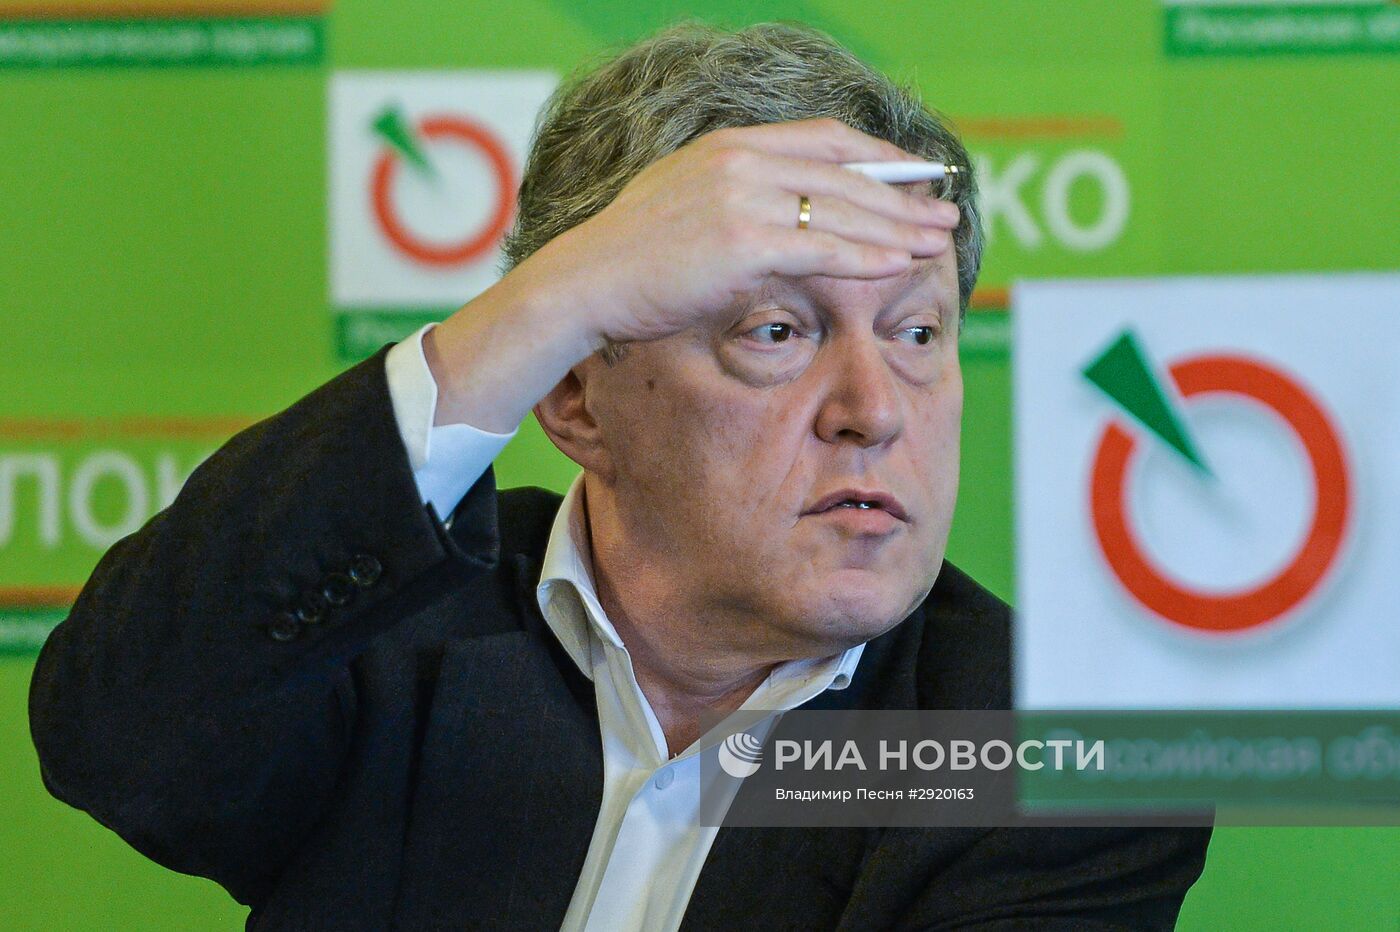 Партия "Яблоко" представила план законодательной работы в Госдуме